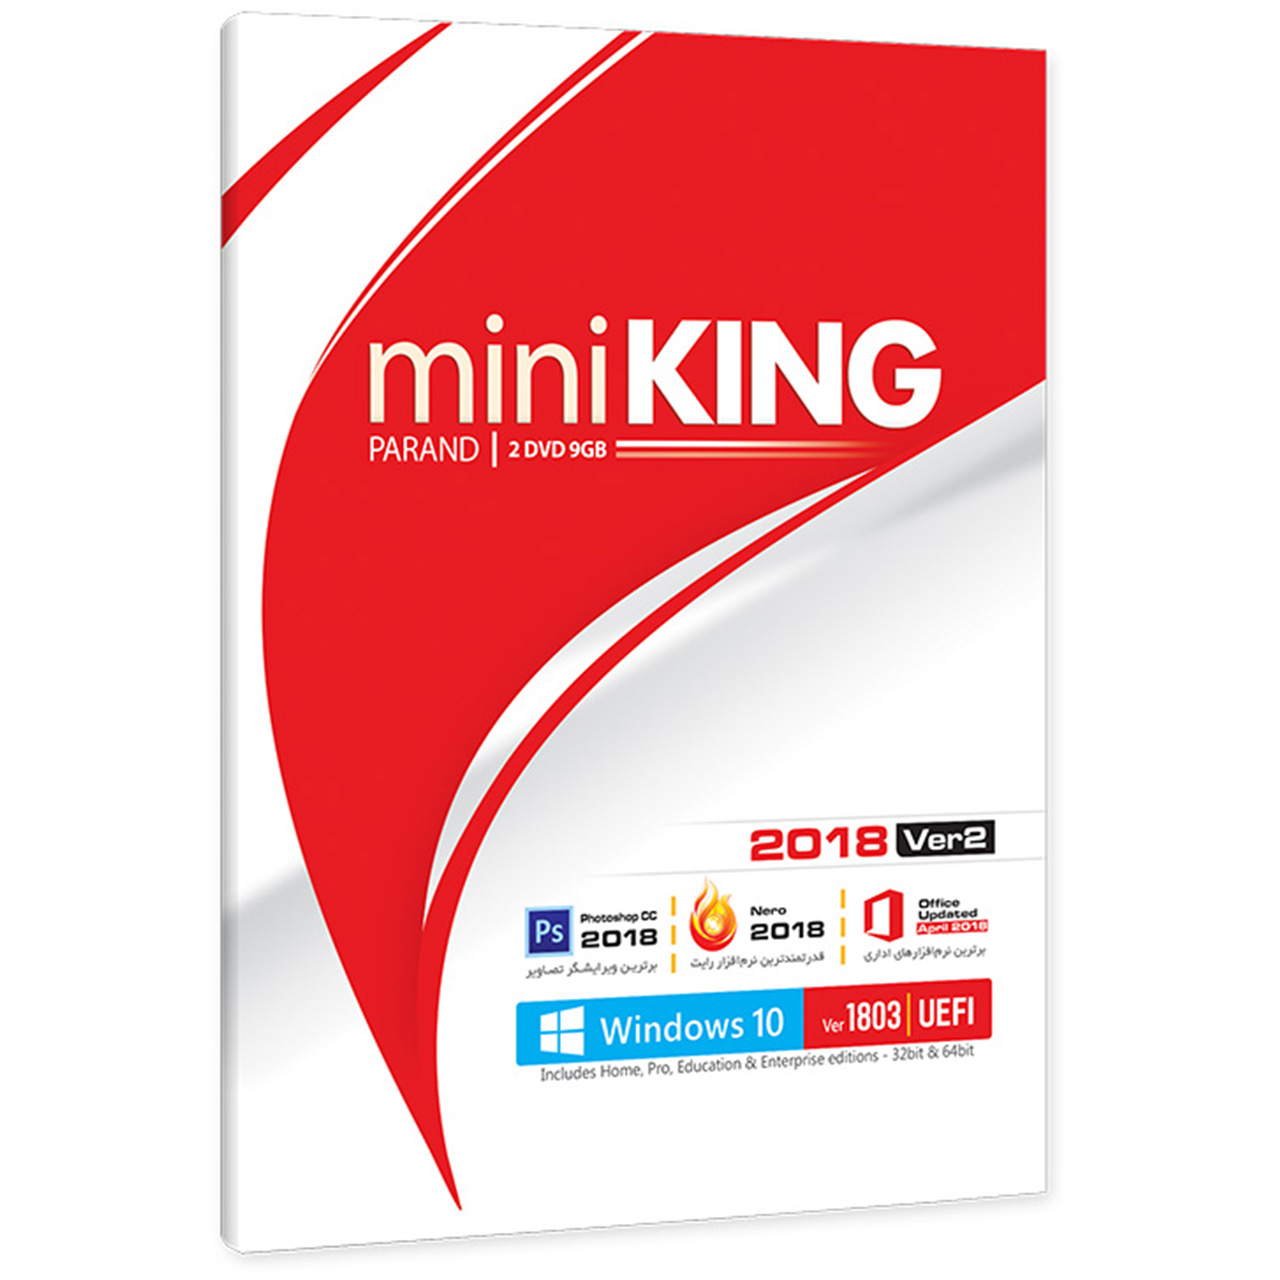 مجموعه نرم افزار Mini King 2018 Ver 2 شرکت پرند